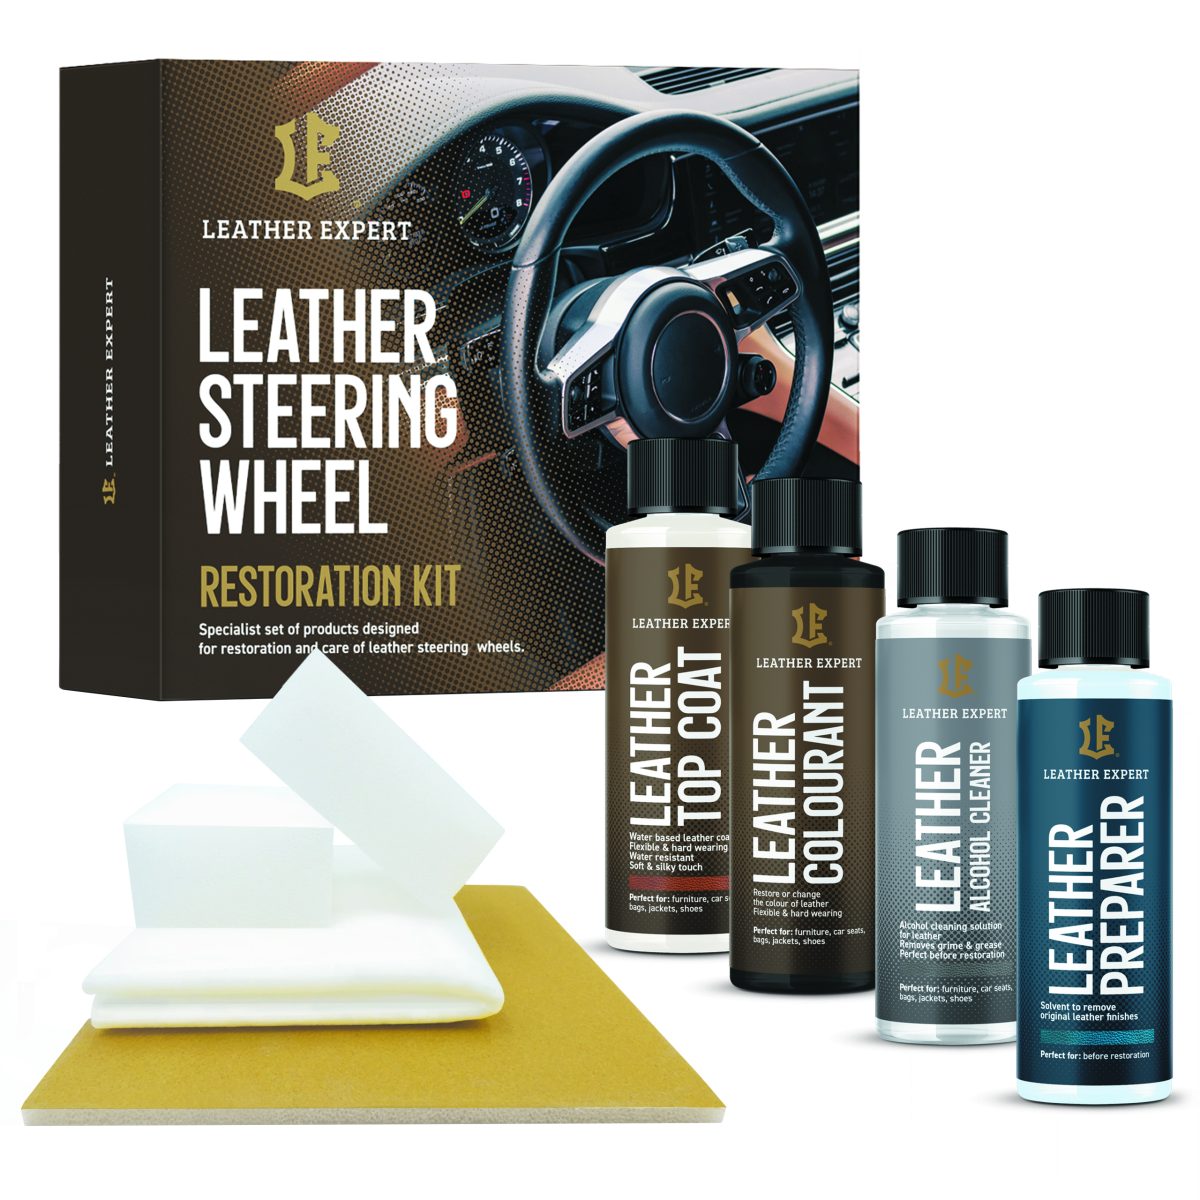 Leather Expert Steering Wheel Restoration Kit set za restauraciju volana je set profesionalnih i učinkovitih proizvoda namijenjenih obnovi crnih volana, sjedala i ostalih kožnih elemenata. Set je spreman za trenutnu upotrebu. Opremljen je najkvalitetnijim proizvodima i svim potrebnim alatima za obnovu volana.